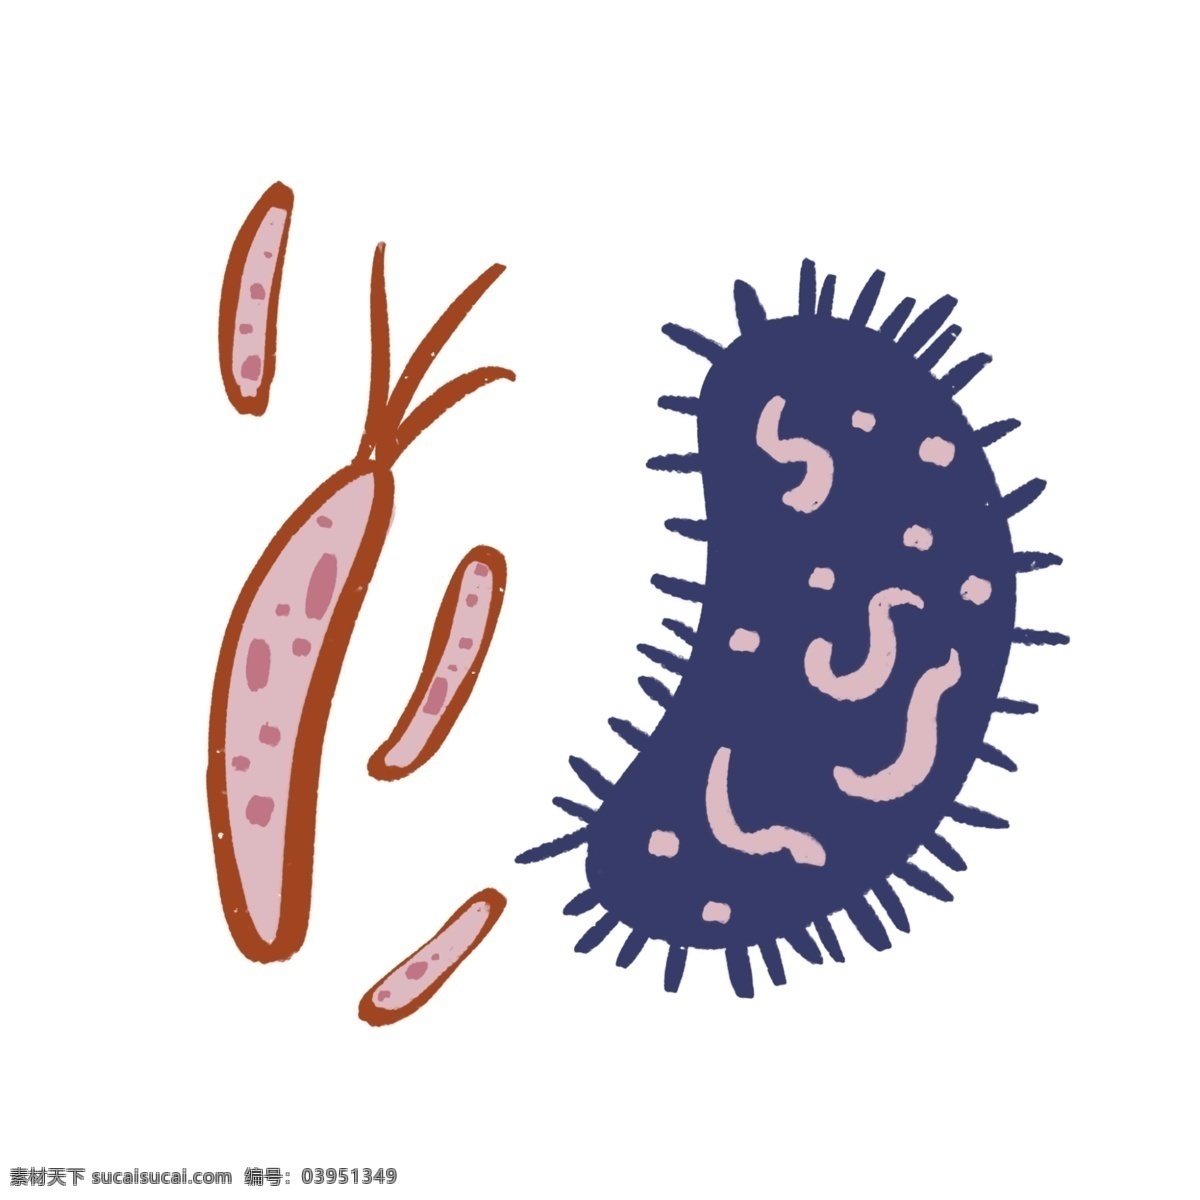 扁平 细胞 细菌 触手 免 抠 病毒 卡通细菌 扁平细菌 卡通细胞 扁平细胞 触角 杀菌 微生物 疾病 健康 仿真细菌 生物 杆菌